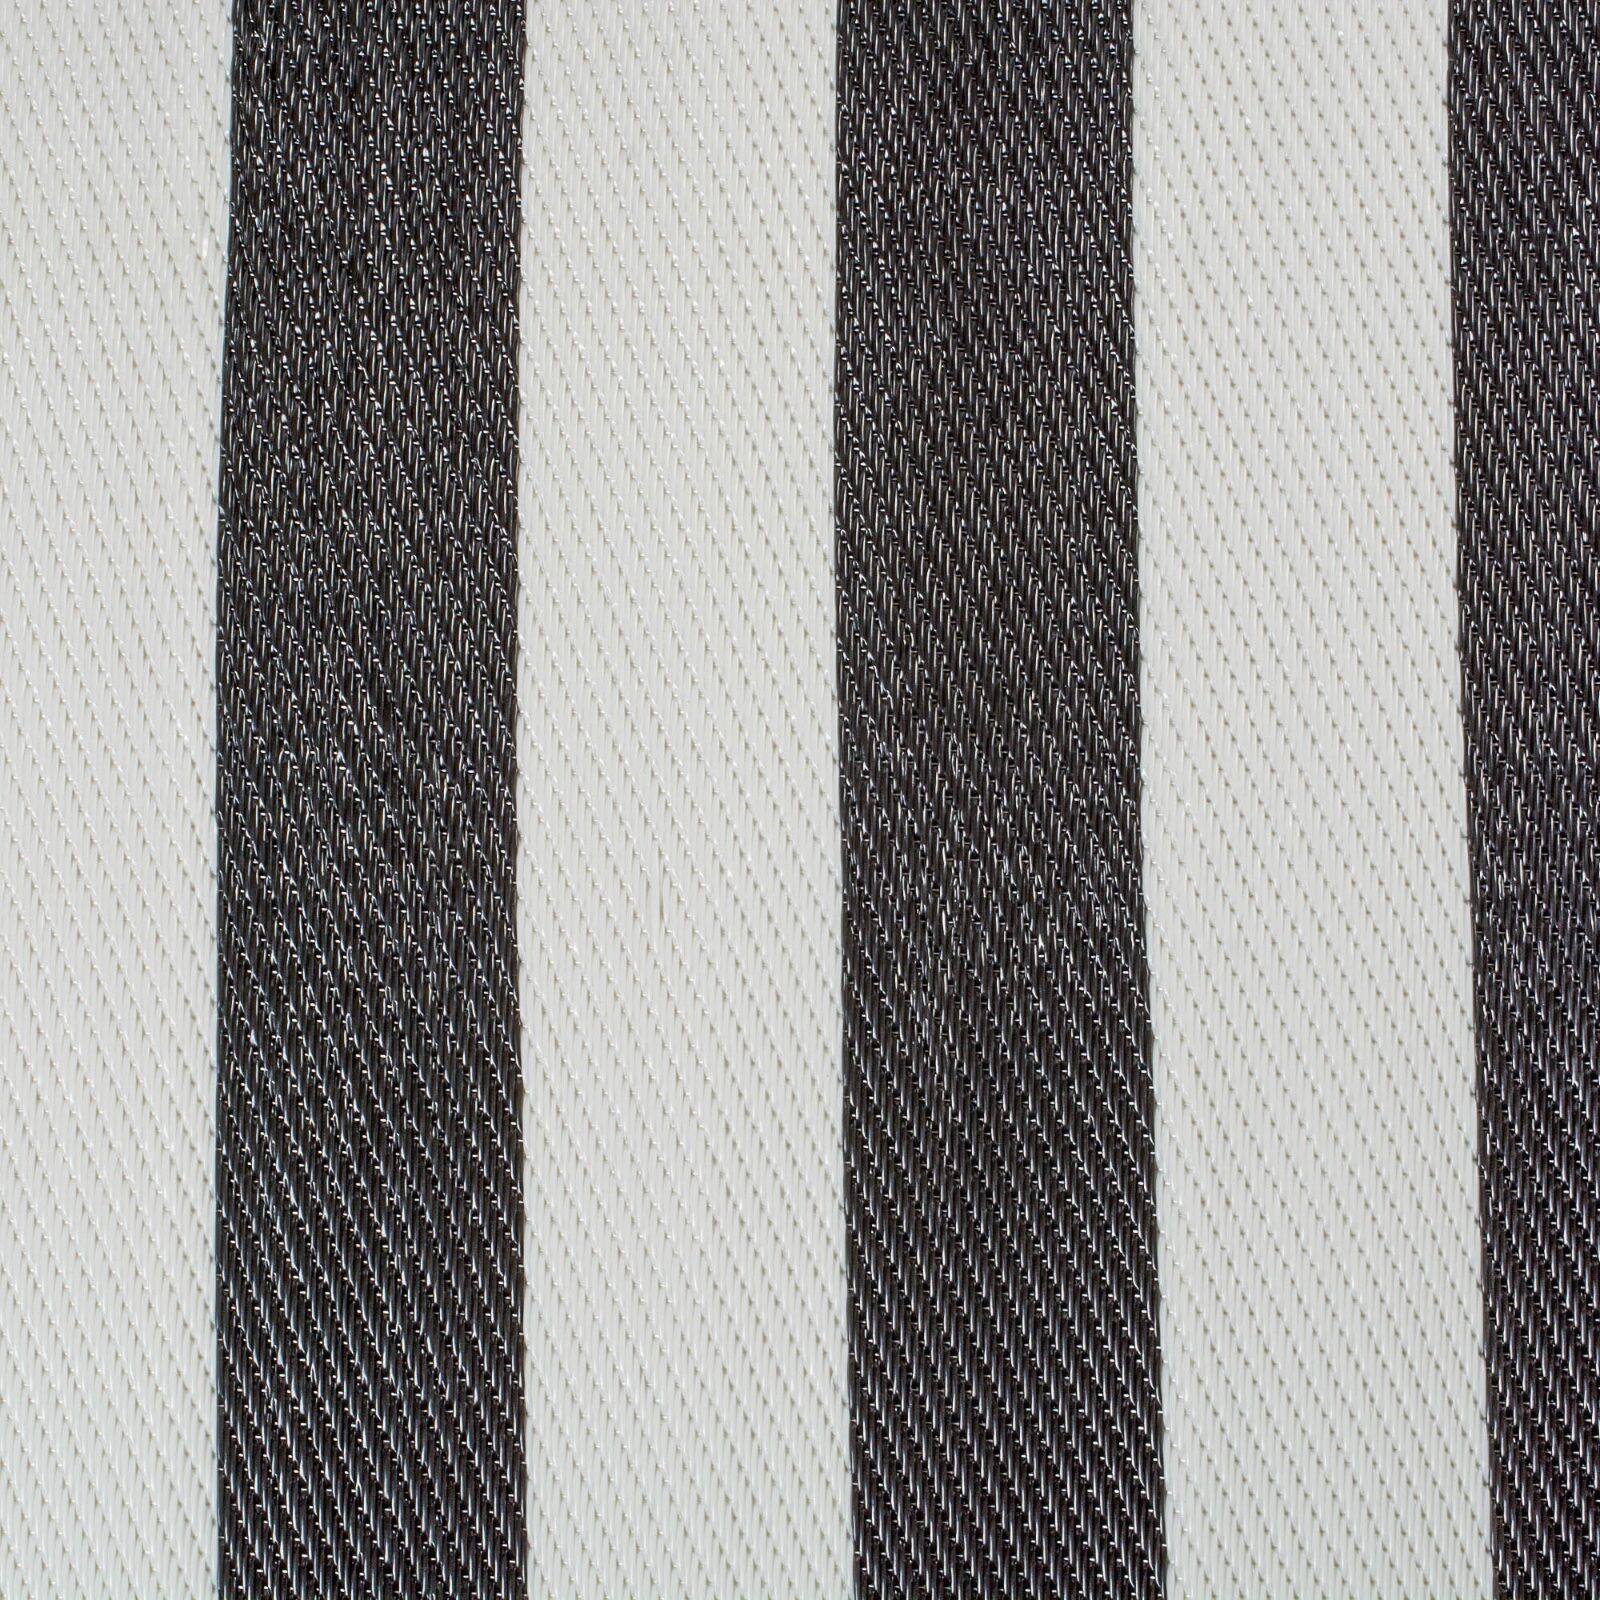 DII&#xAE; Black &#x26; White Stripe Outdoor Rug, 4ft. x 6ft.